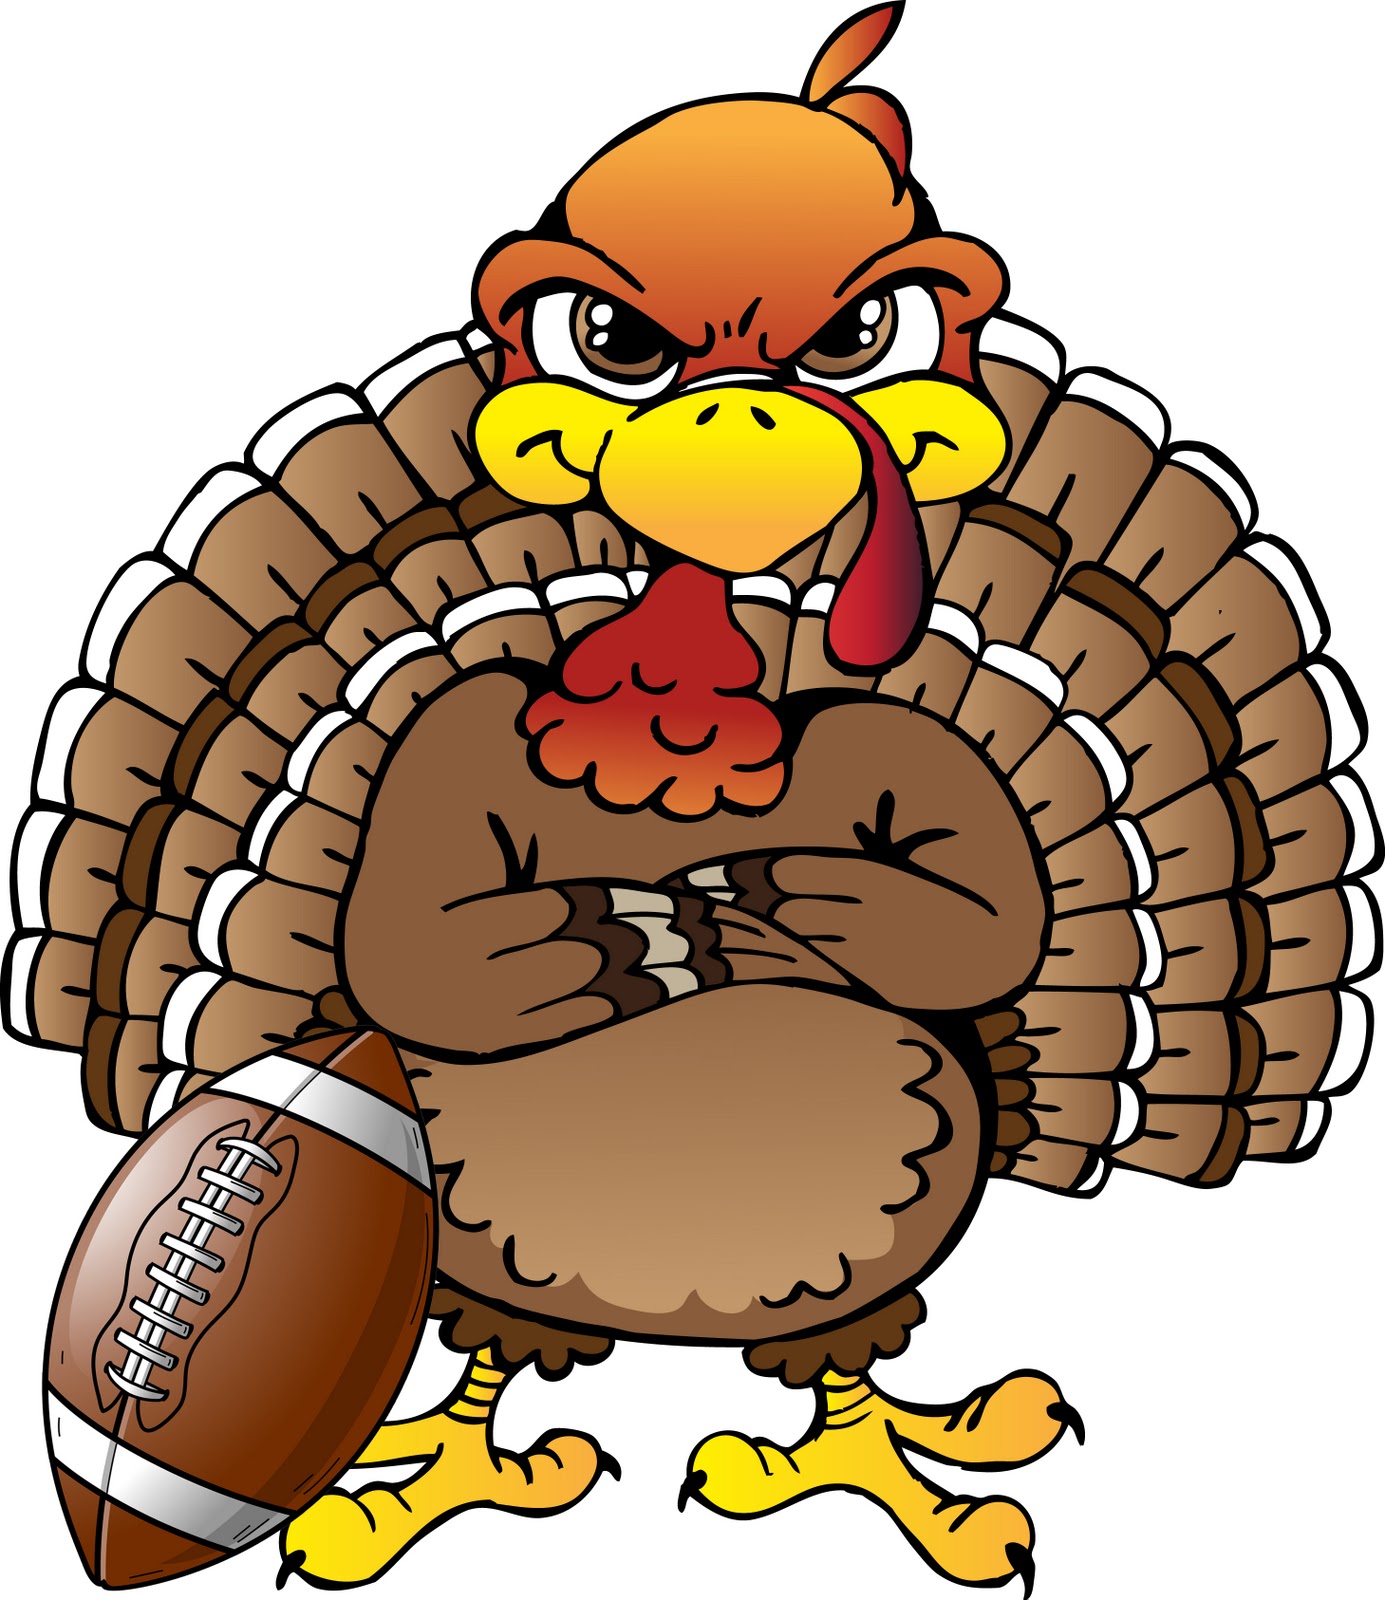 Funny Turkey Clip Art | Funny Thanksgiving Images, wallpaper, Funny Thanksgiving Images hd ... | Art | Pinterest | Very funny, Thanksgiving and Funny ...